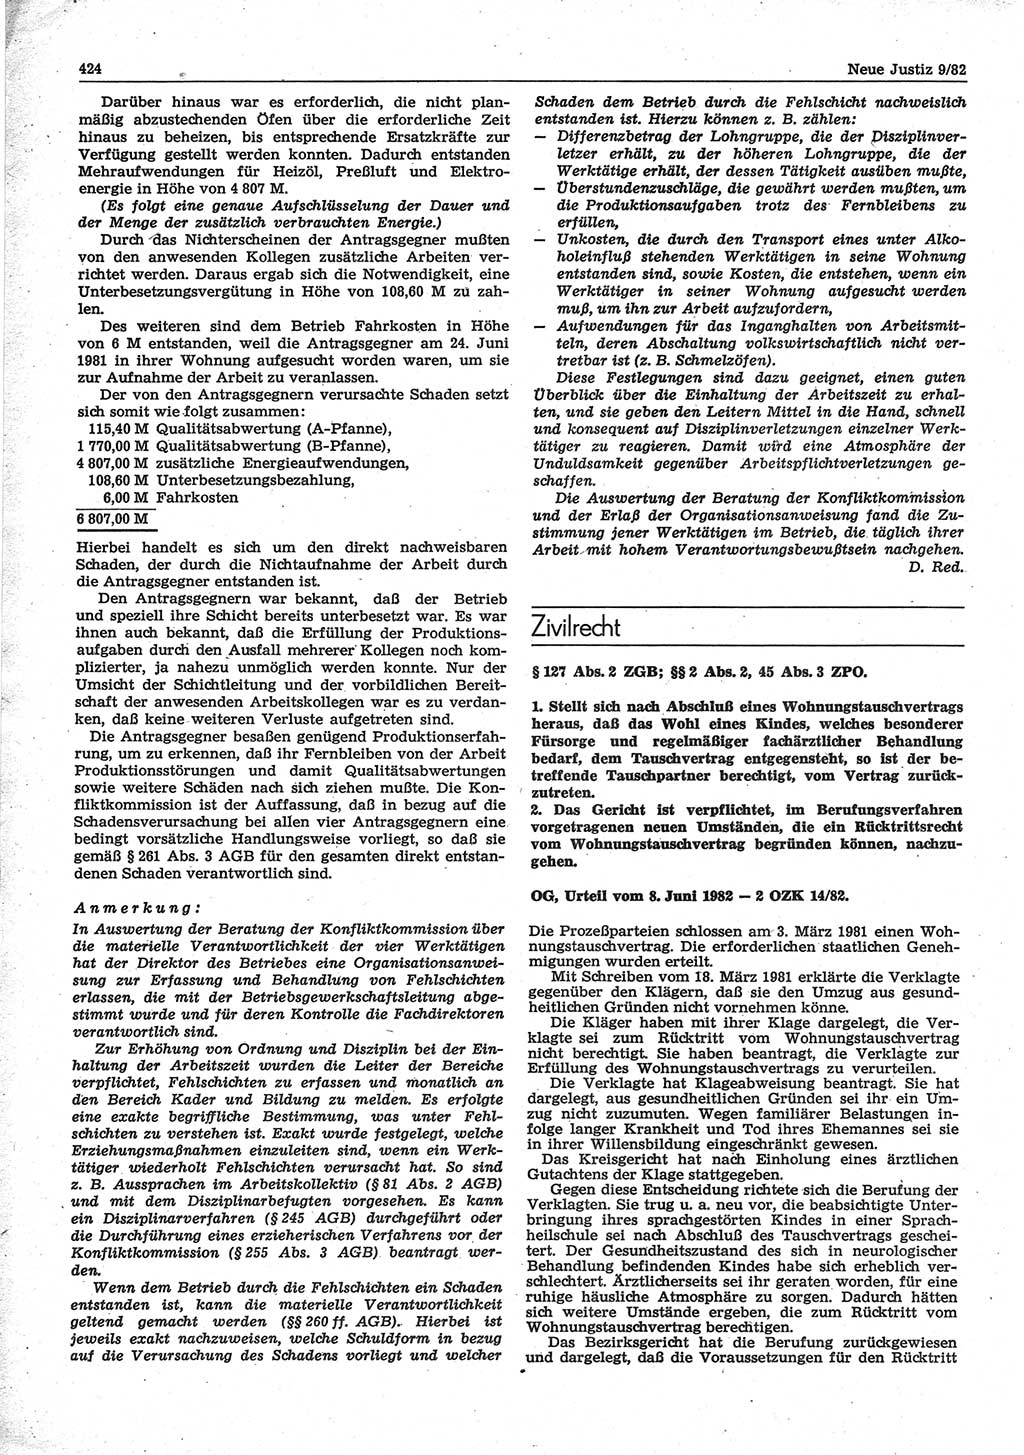 Neue Justiz (NJ), Zeitschrift für sozialistisches Recht und Gesetzlichkeit [Deutsche Demokratische Republik (DDR)], 36. Jahrgang 1982, Seite 424 (NJ DDR 1982, S. 424)